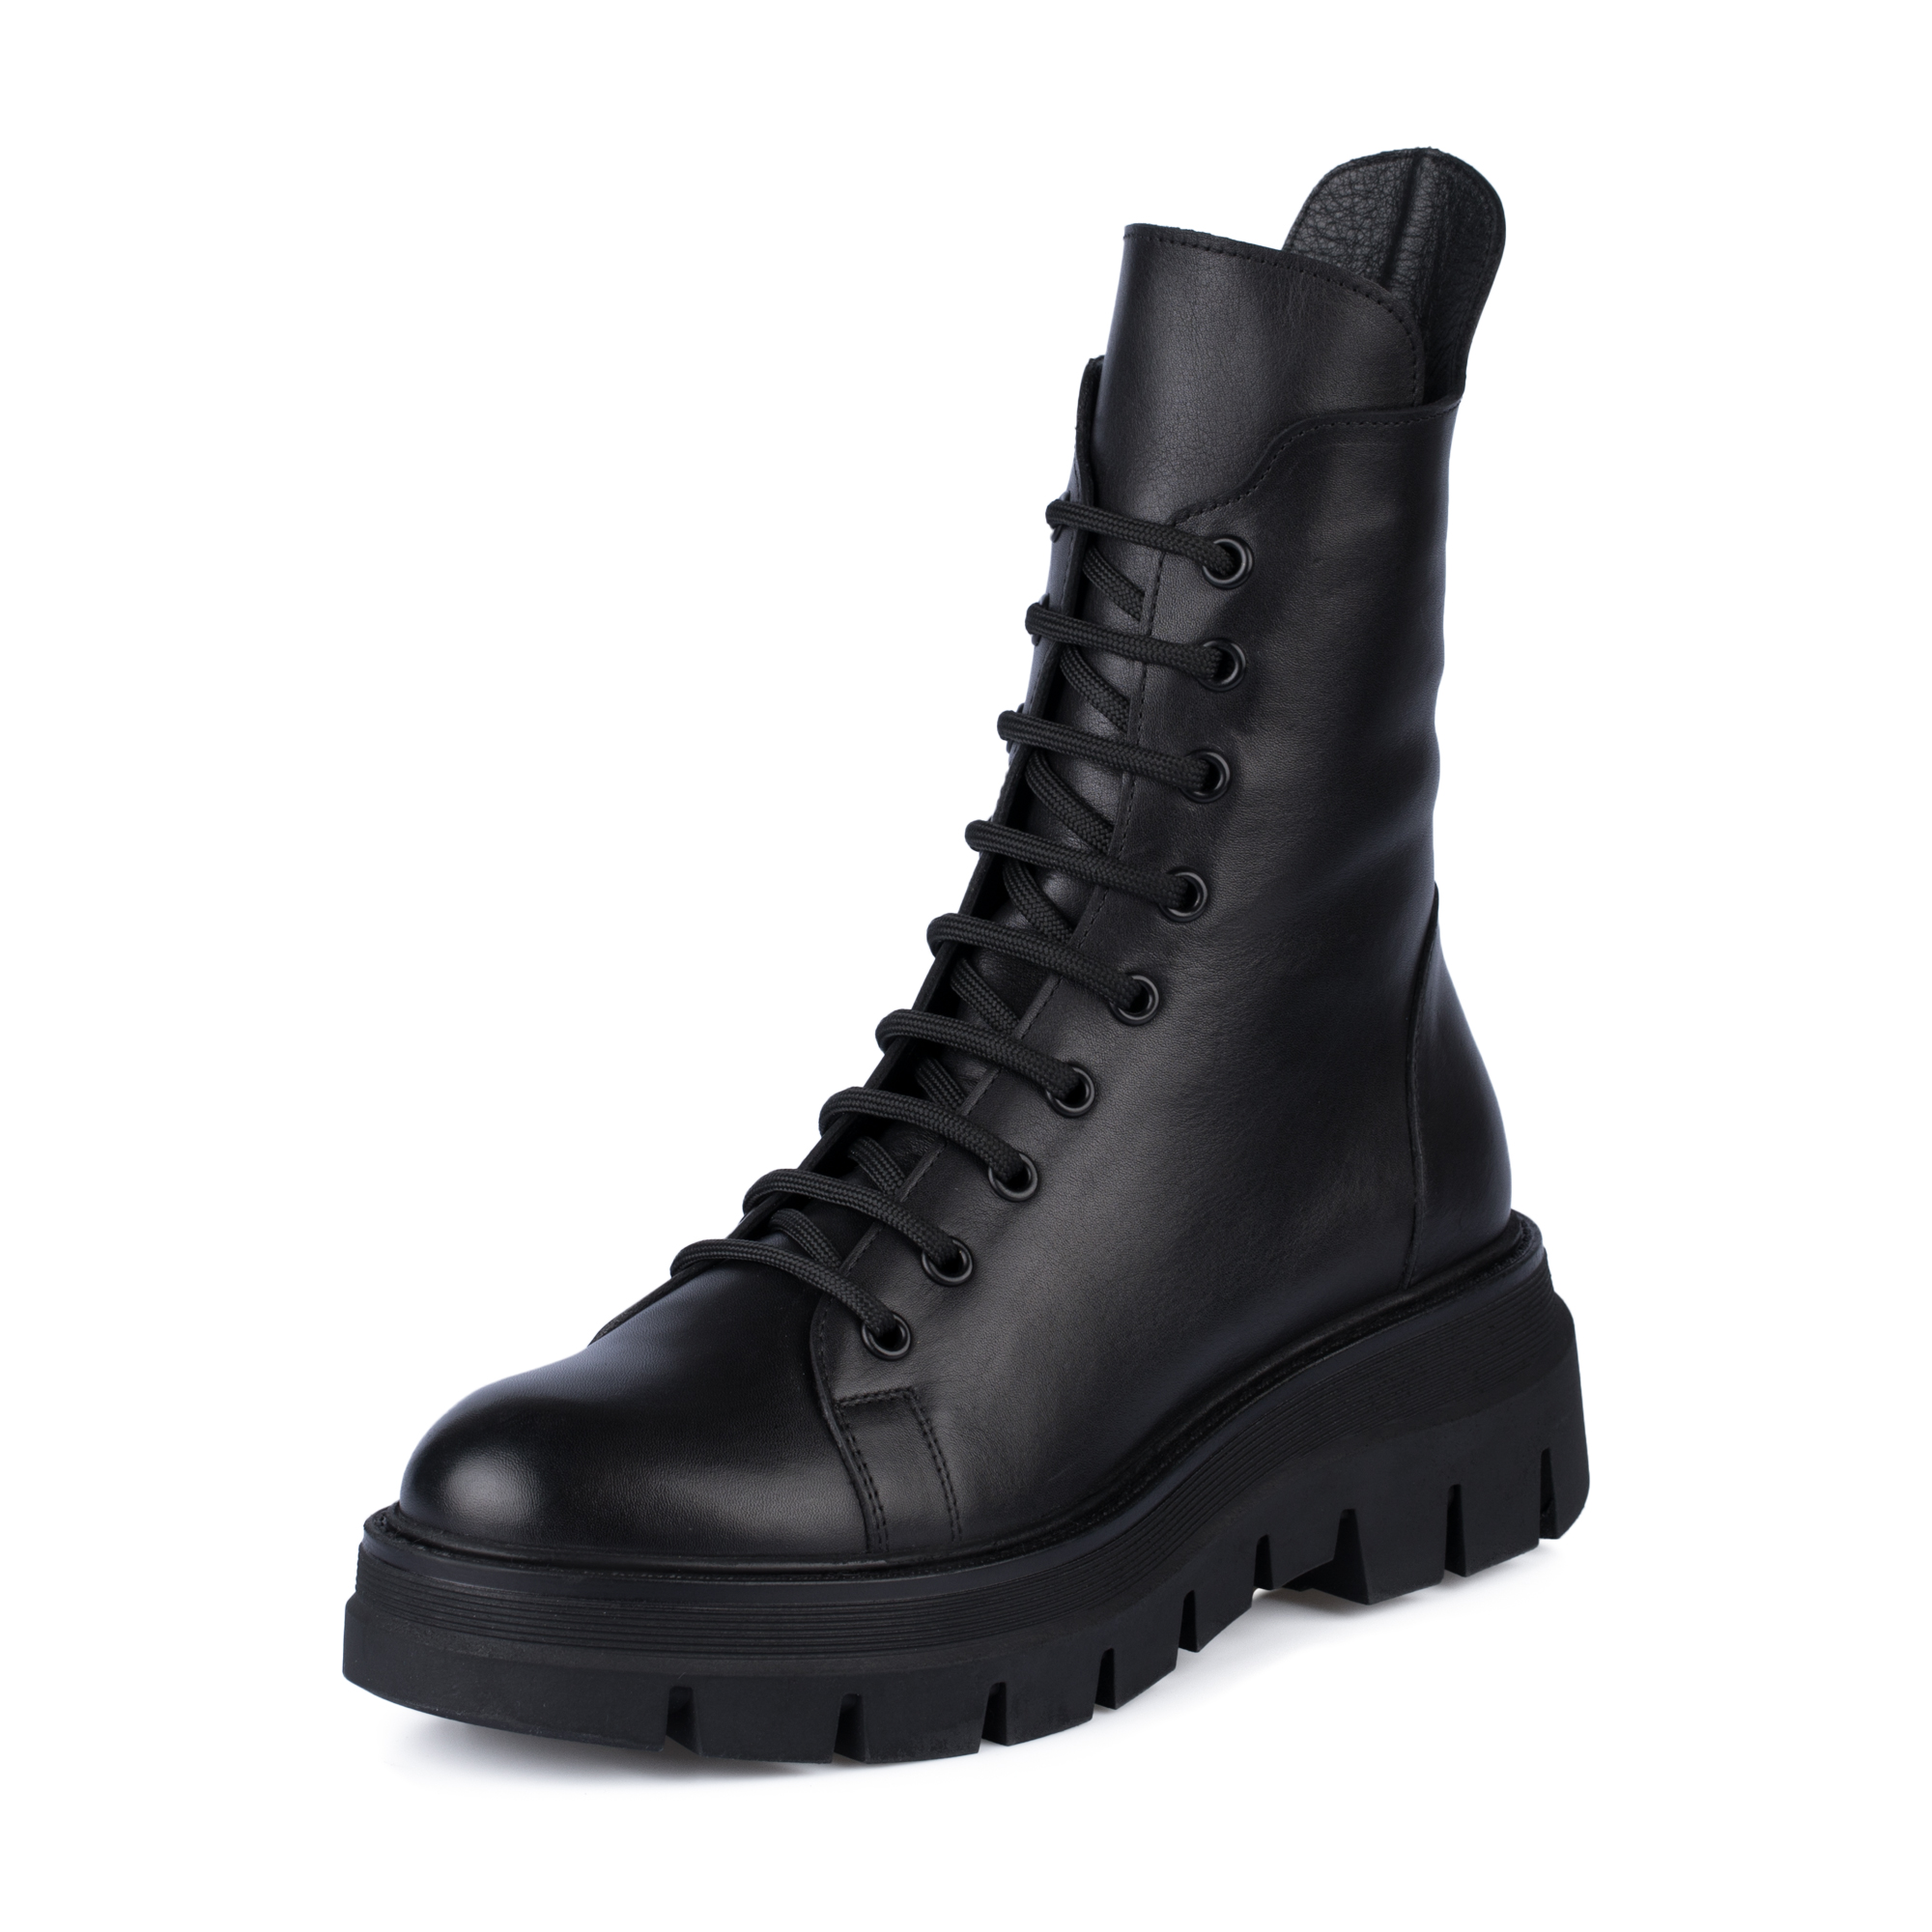 Ботинки Thomas Munz 539-021C-2102, цвет черный, размер 39 - фото 2